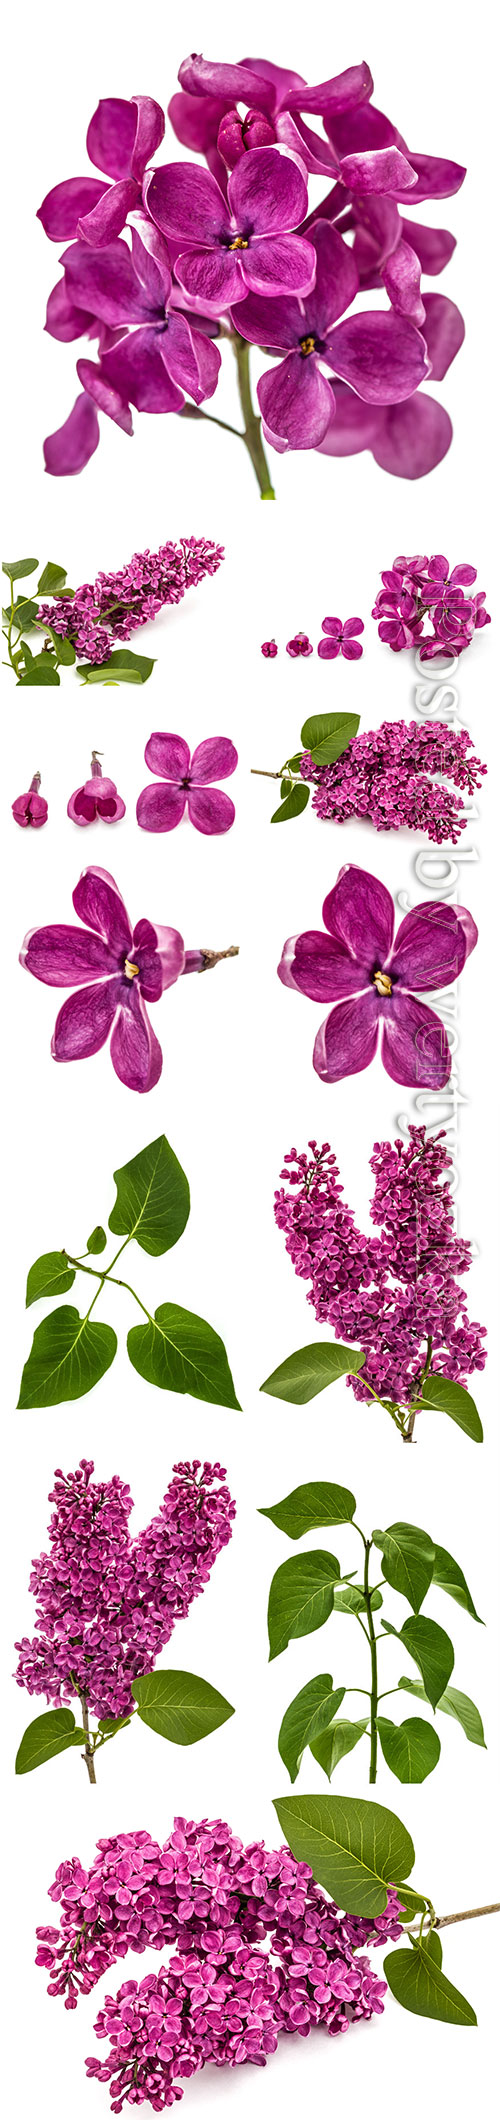 Lilac beautiful stock photo